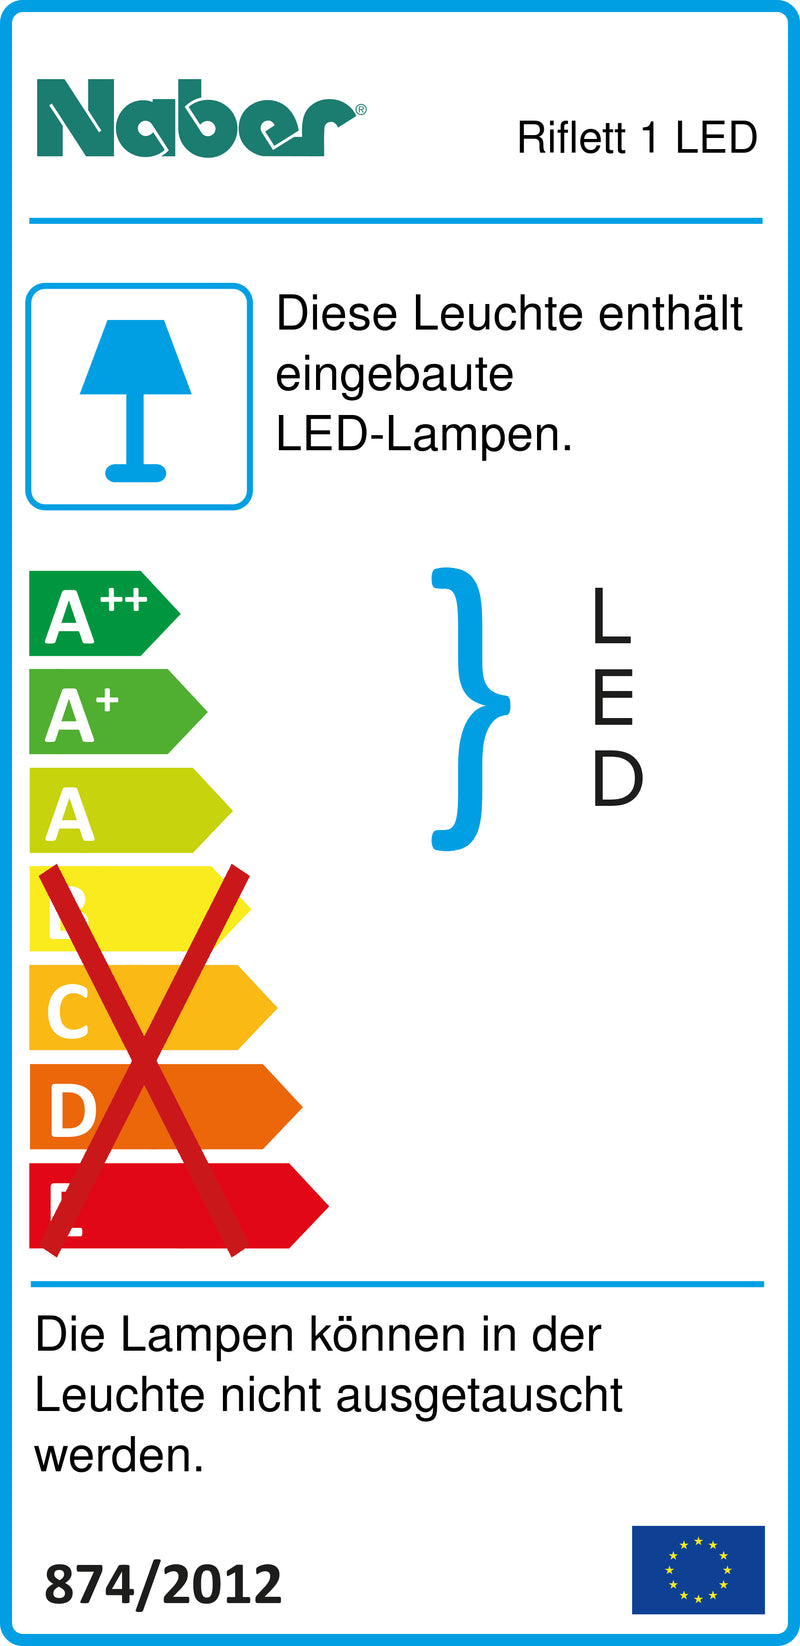 E-Label zu Zeichnung zu Riflett 1 LED als Variante Set-3, 3000 K warmweiß von Naber GmbH in der Kategorie Lichttechnik in Österreich auf conceptshop.at